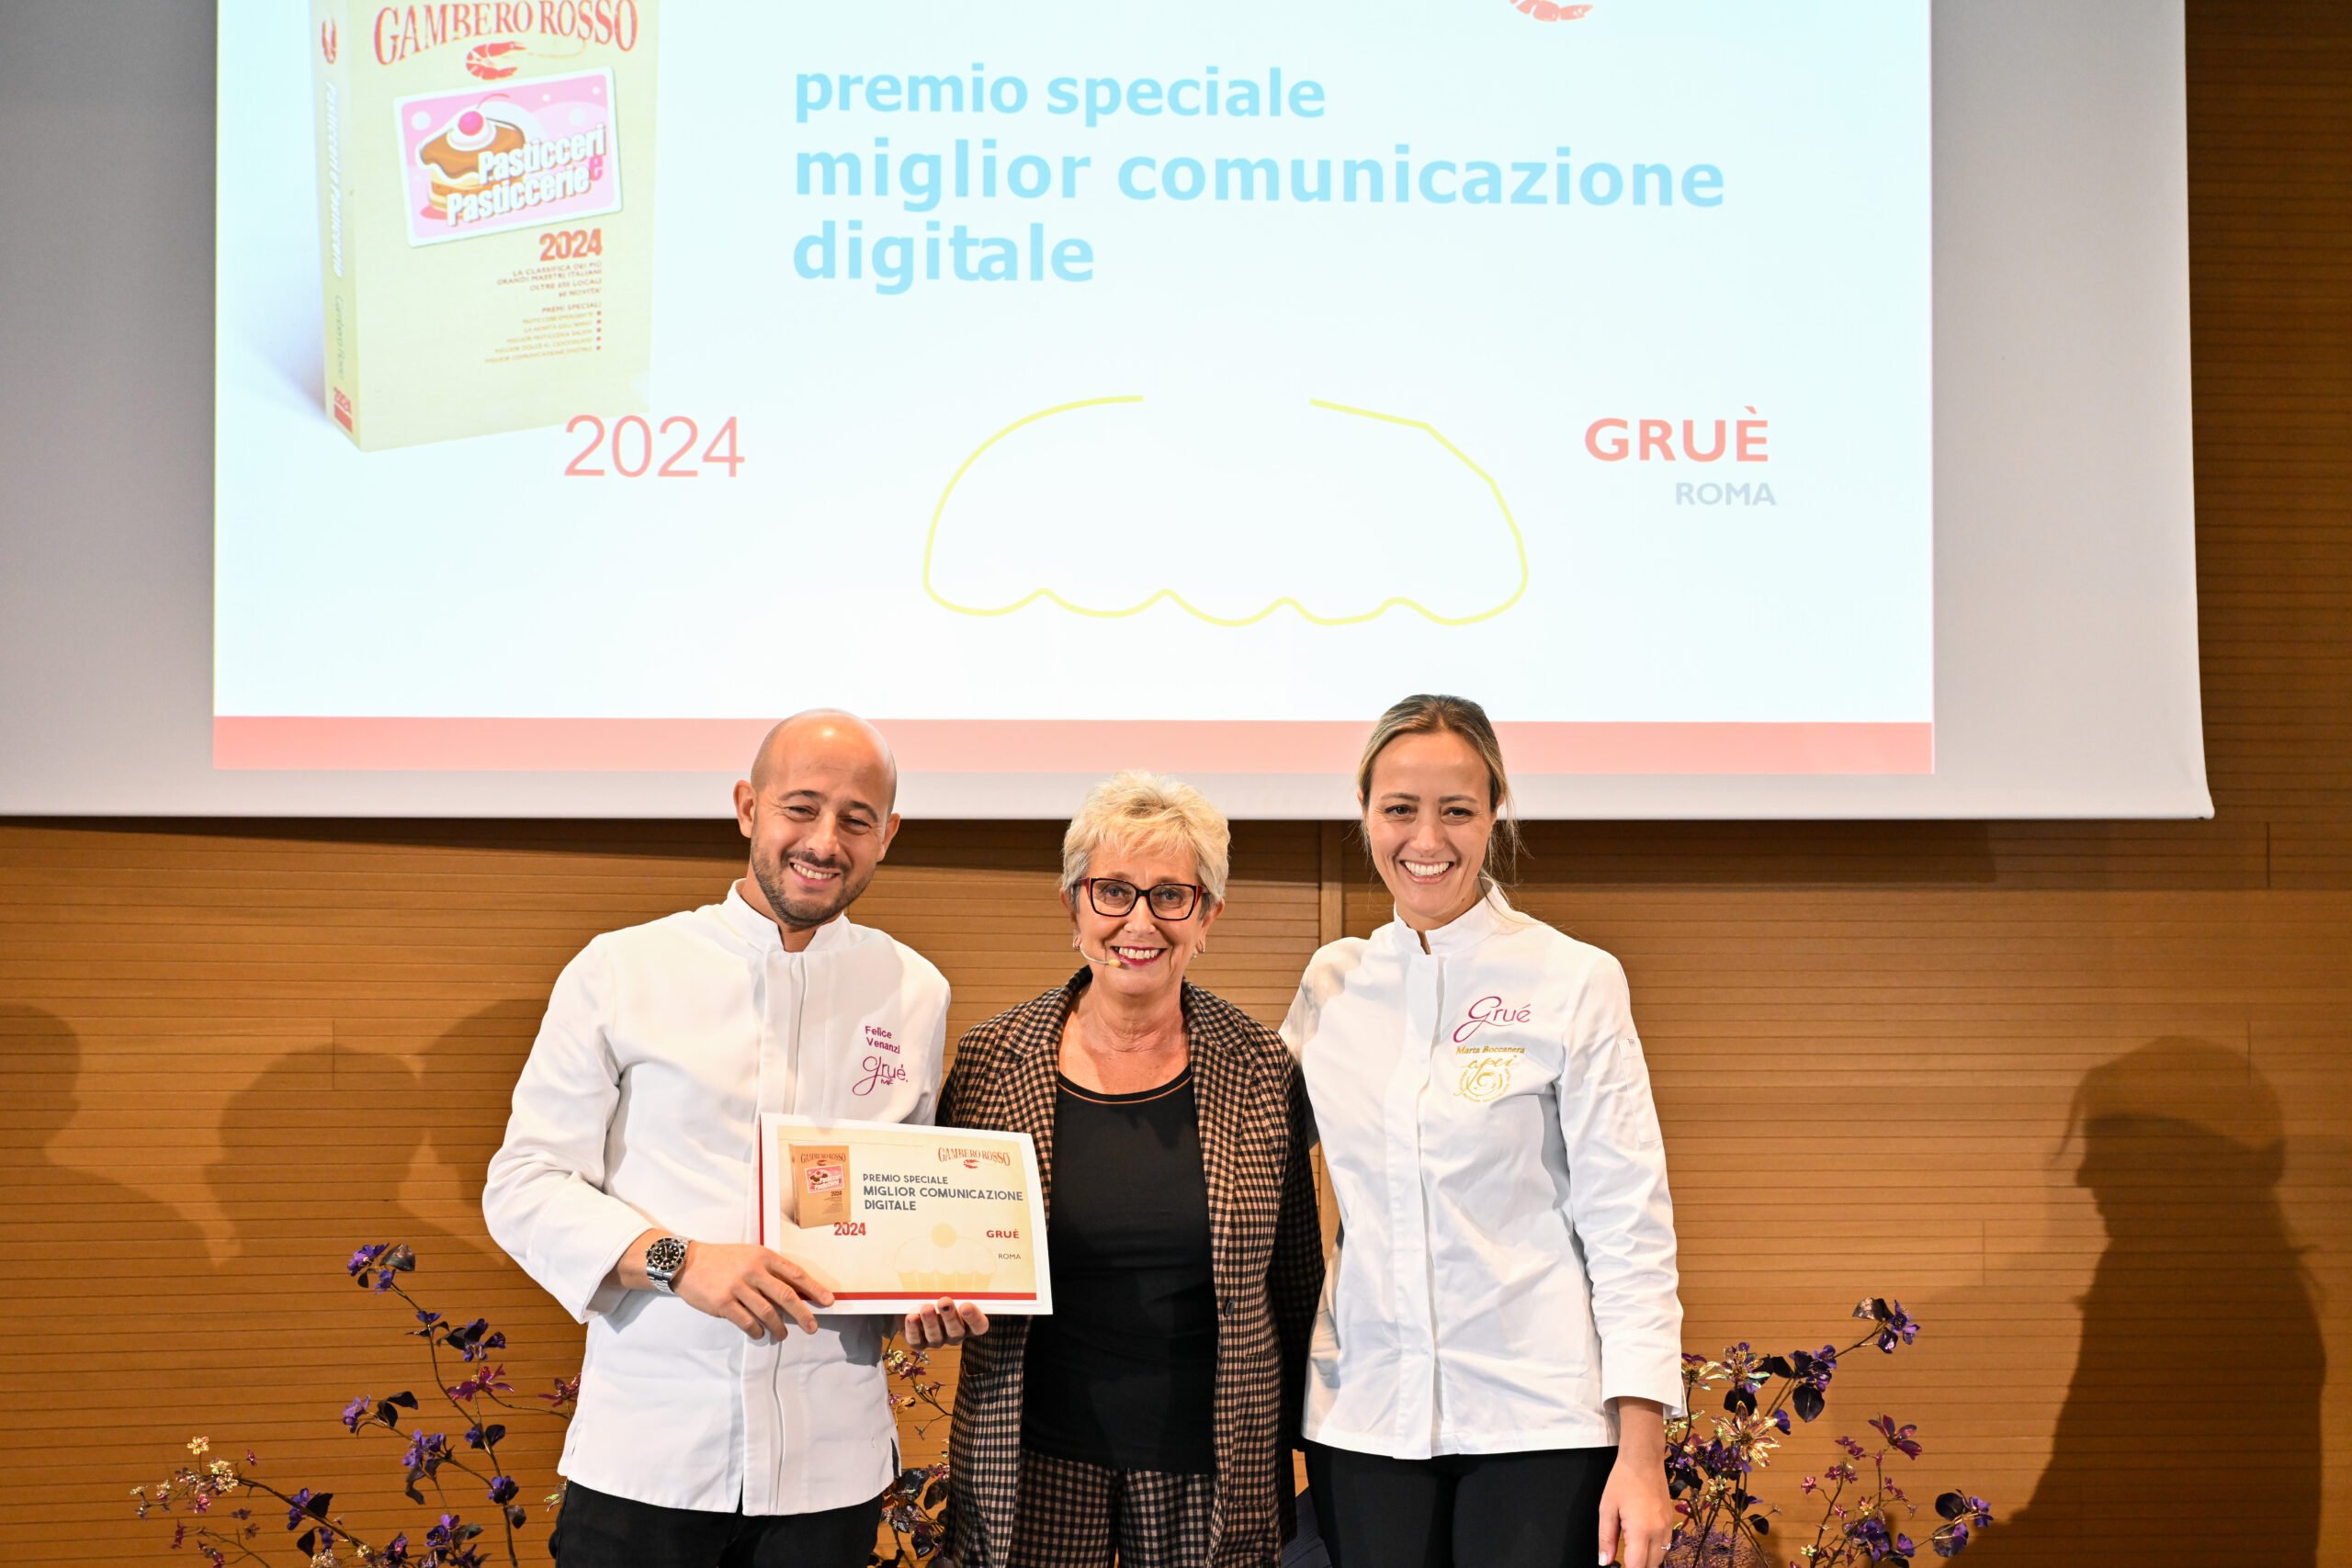 Grué vince il Premio “Migliore Comunicazione Digitale” con In-Nova